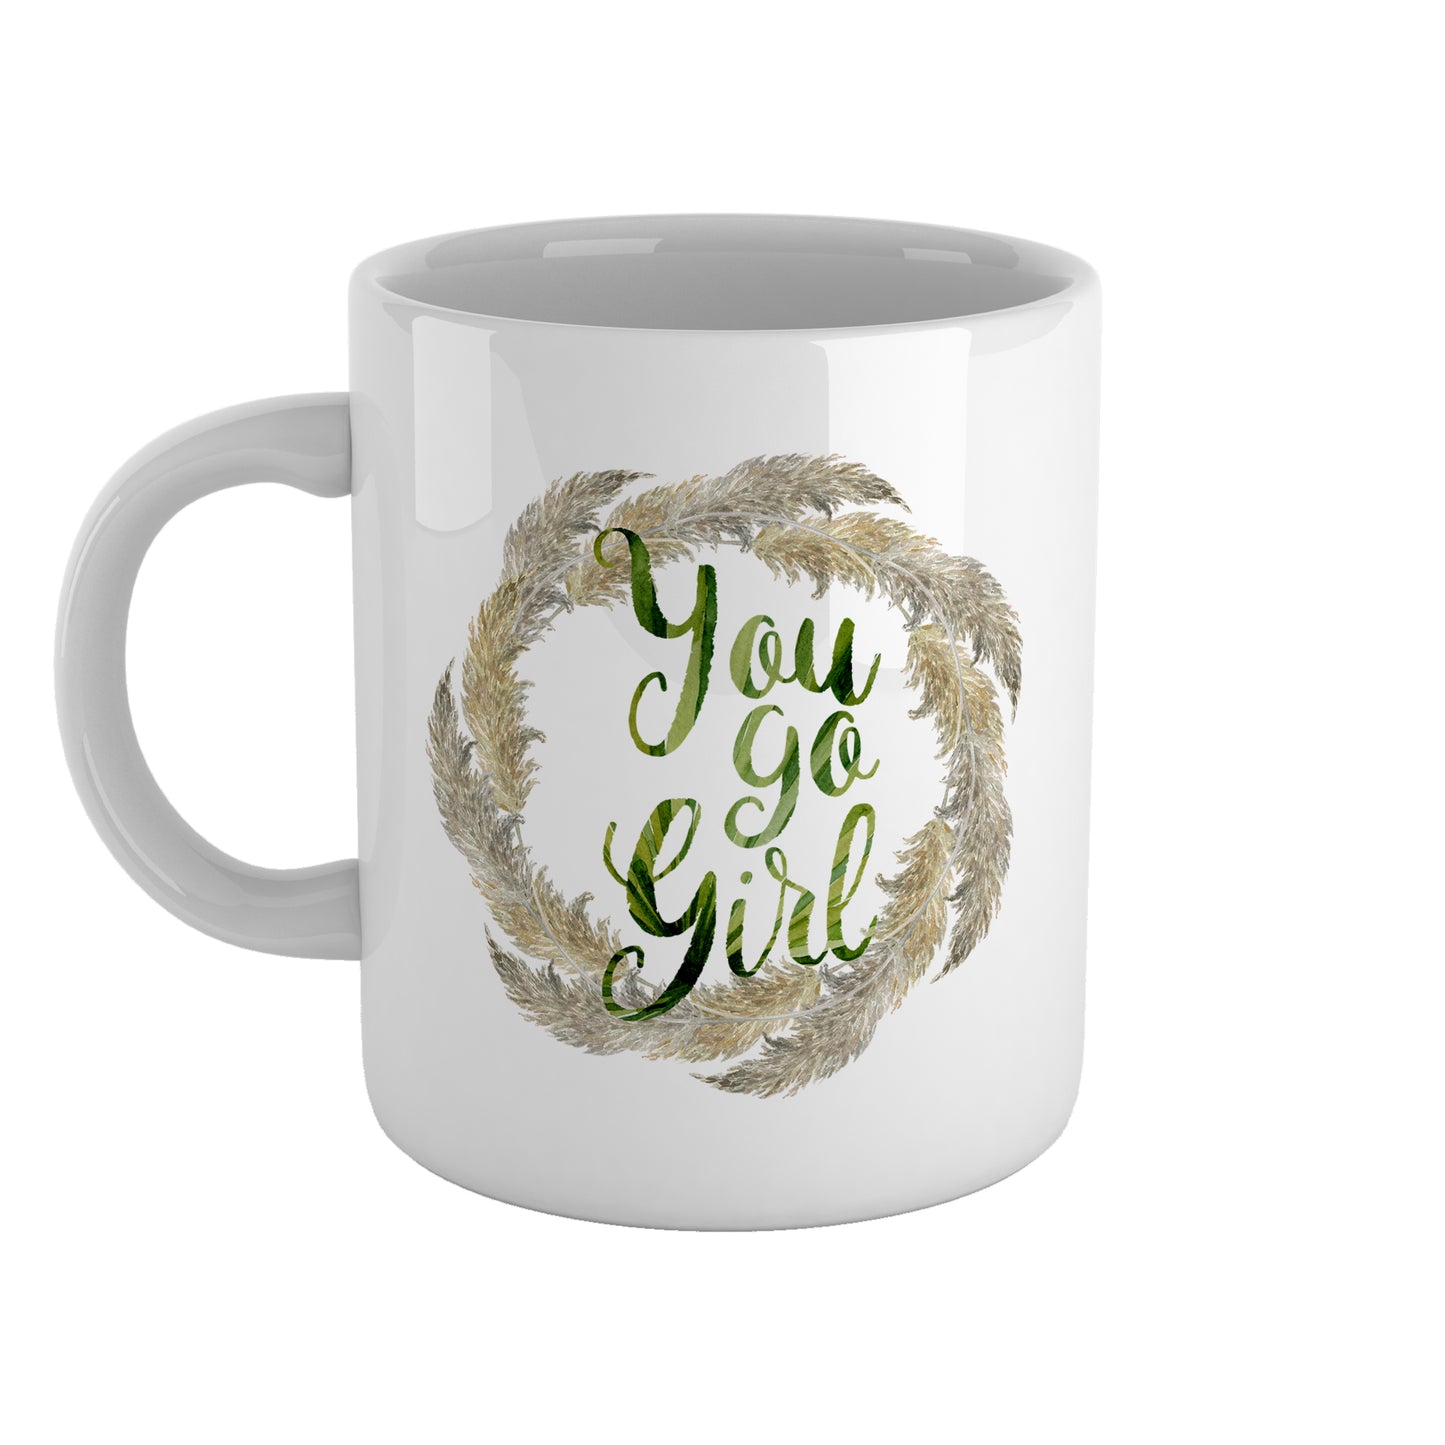 You go girl | Ceramic mug